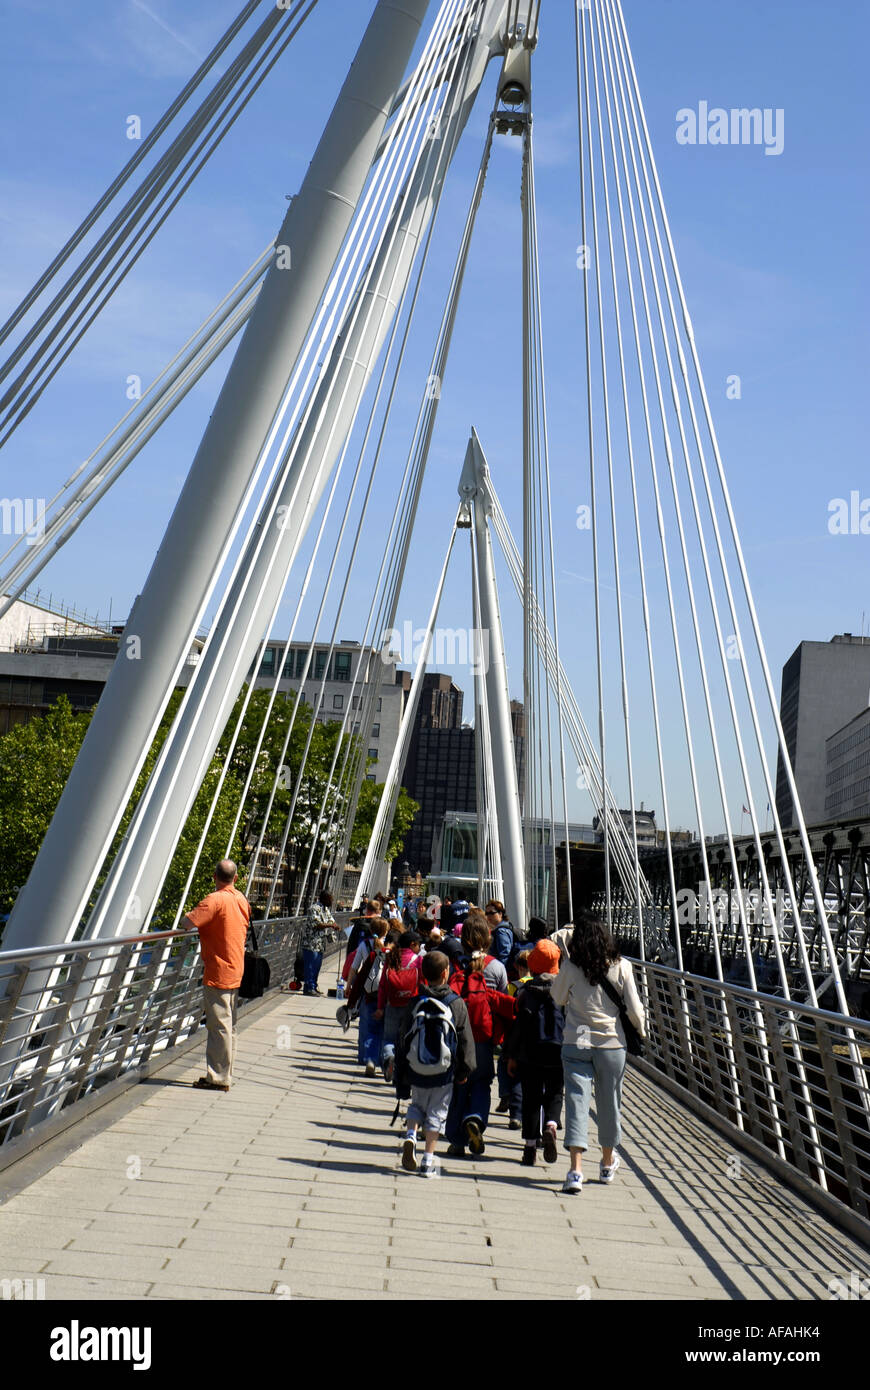 Les touristes marcher sur Hungerford Bridge vers la Southbank, salle des fêtes, traversant la Tamise. Londres, Angleterre, Royaume-Uni. Banque D'Images